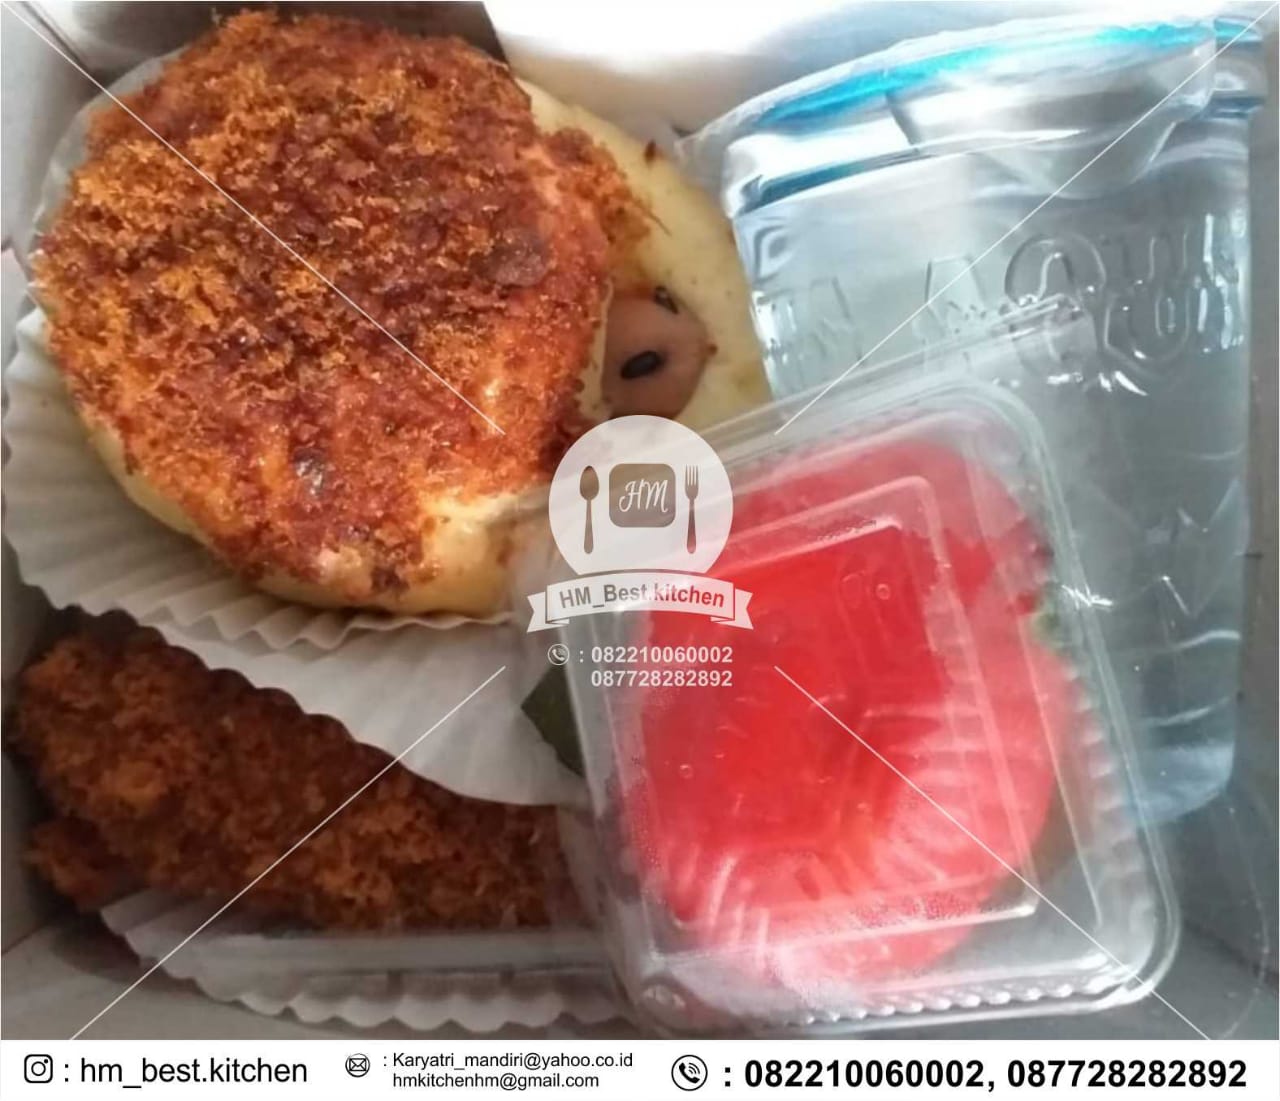 Snack Rapat / Snack Box